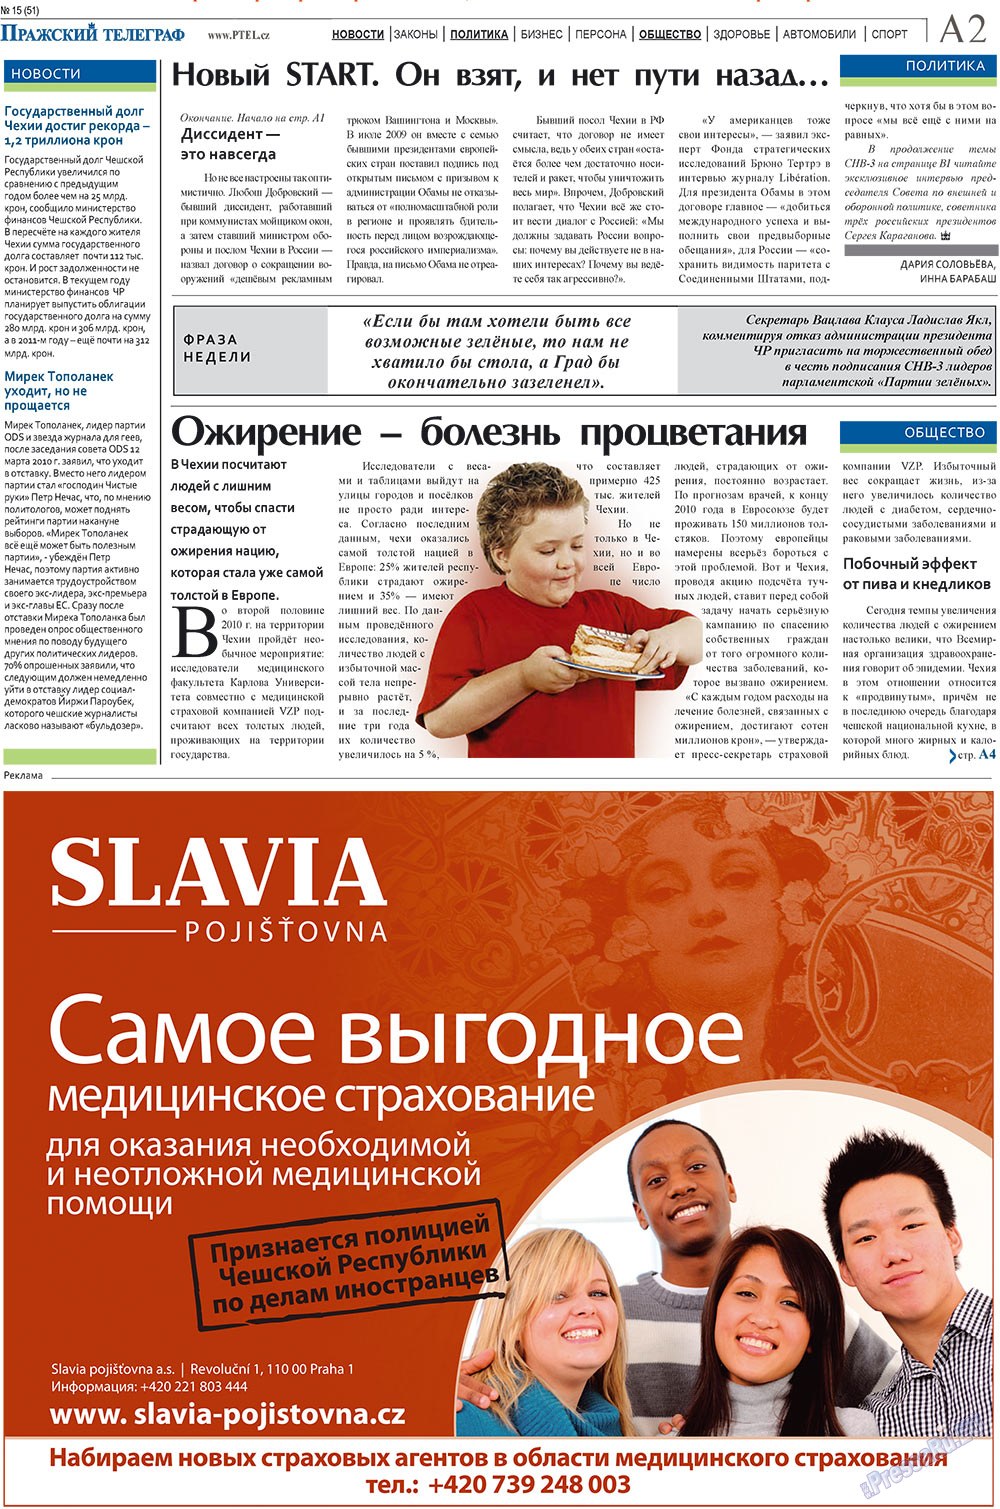 Пражский телеграф (газета). 2010 год, номер 15, стр. 2